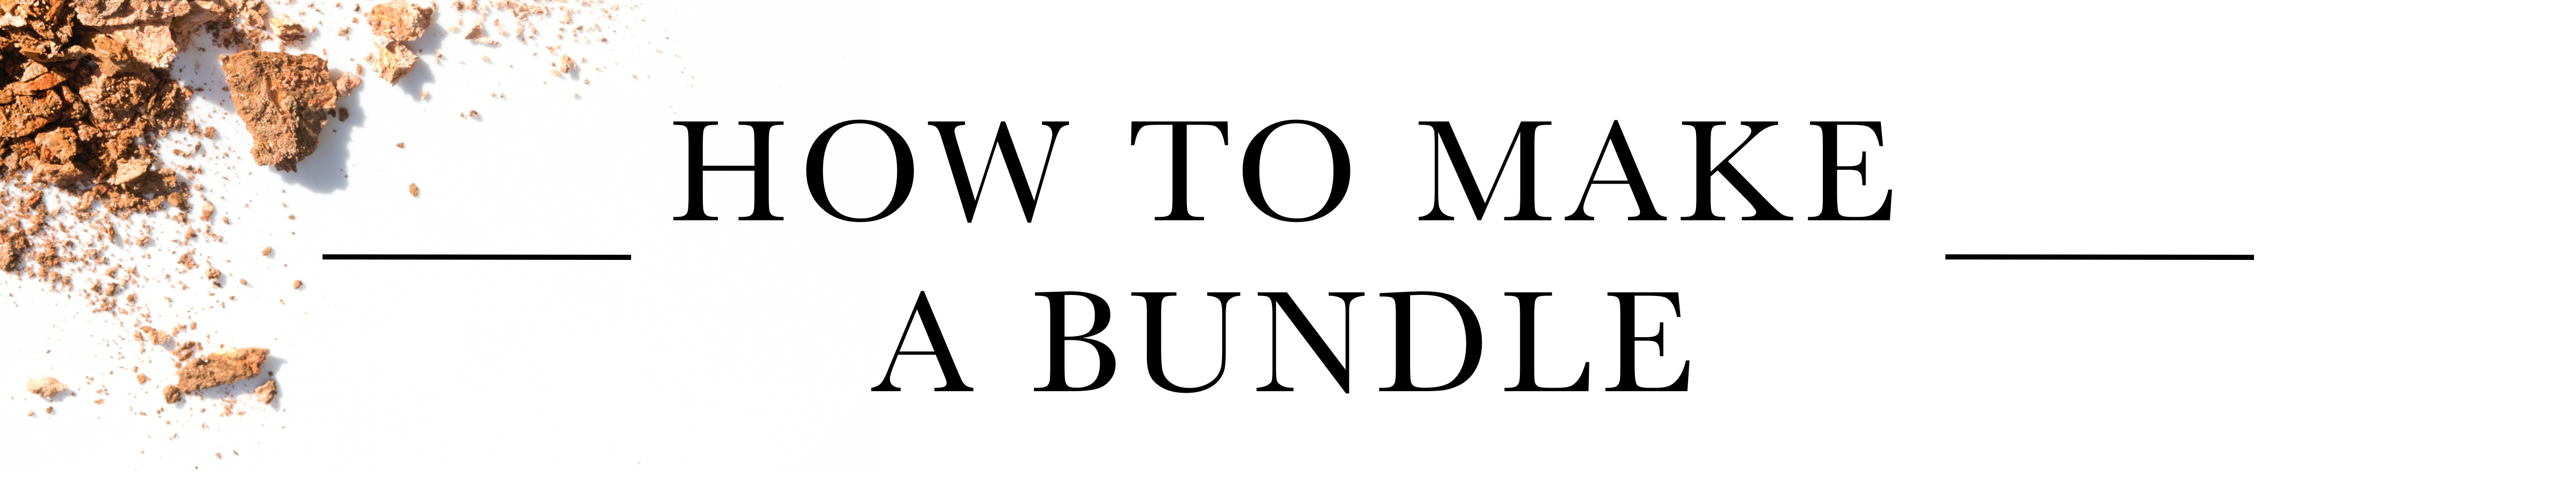 HOW TO MAKE BUNDLE